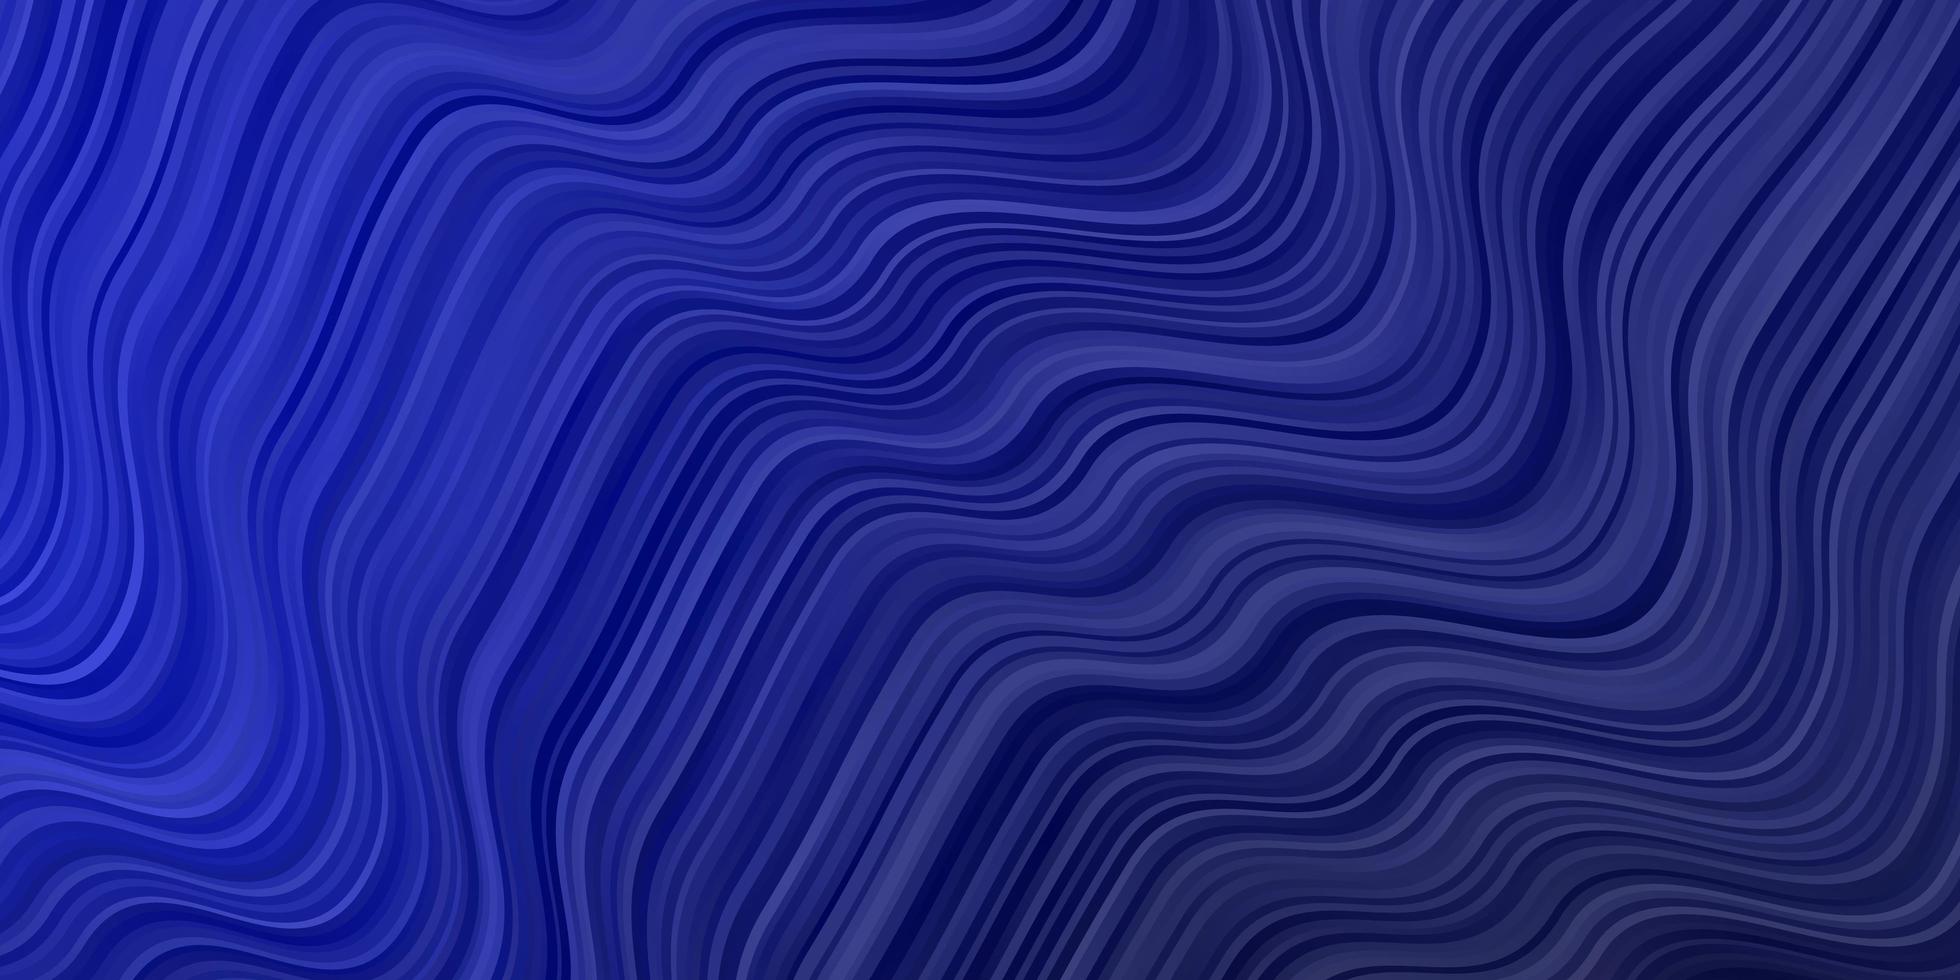 layout de vetor de azul escuro com linhas irônicas.